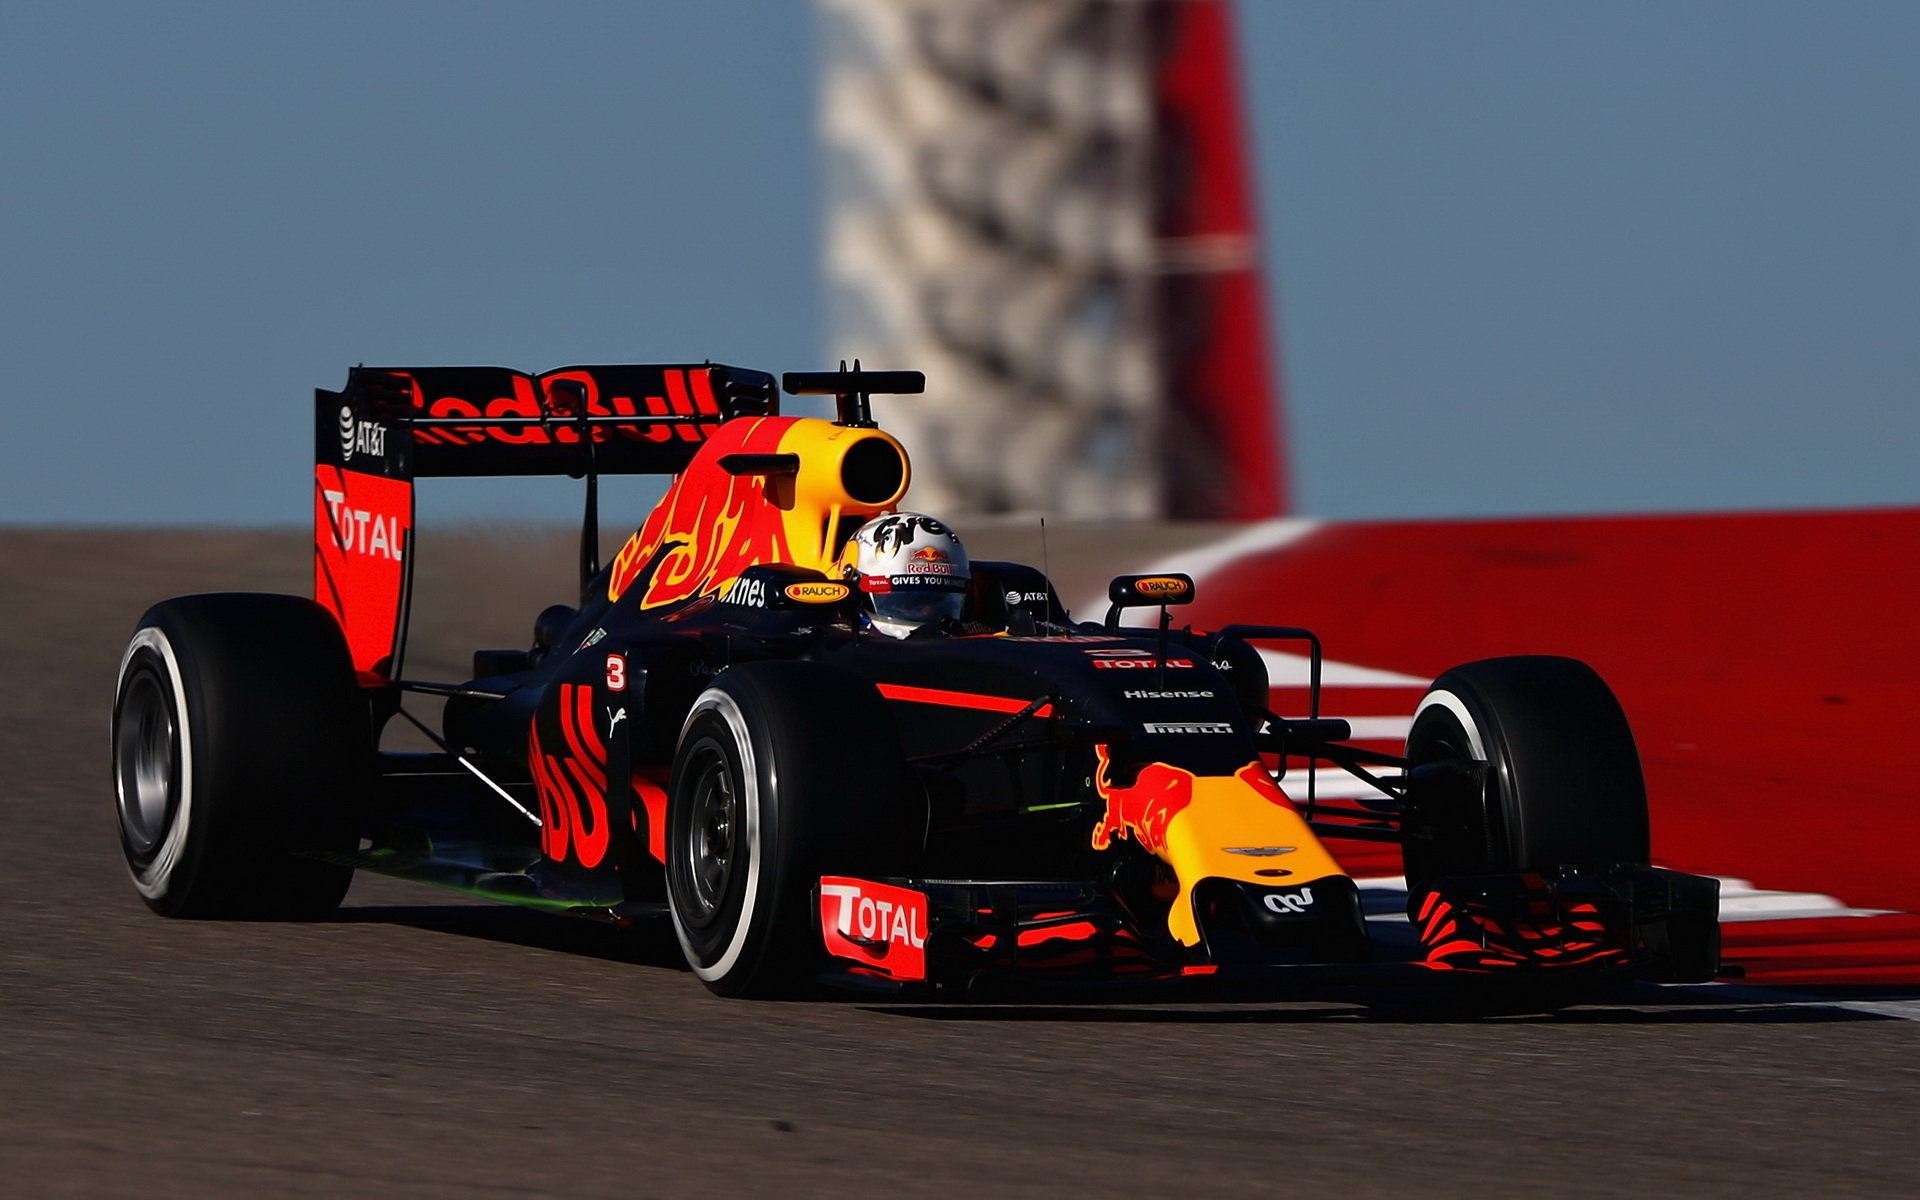 Daniel Ricciardo v kvalifikaci v Austinu